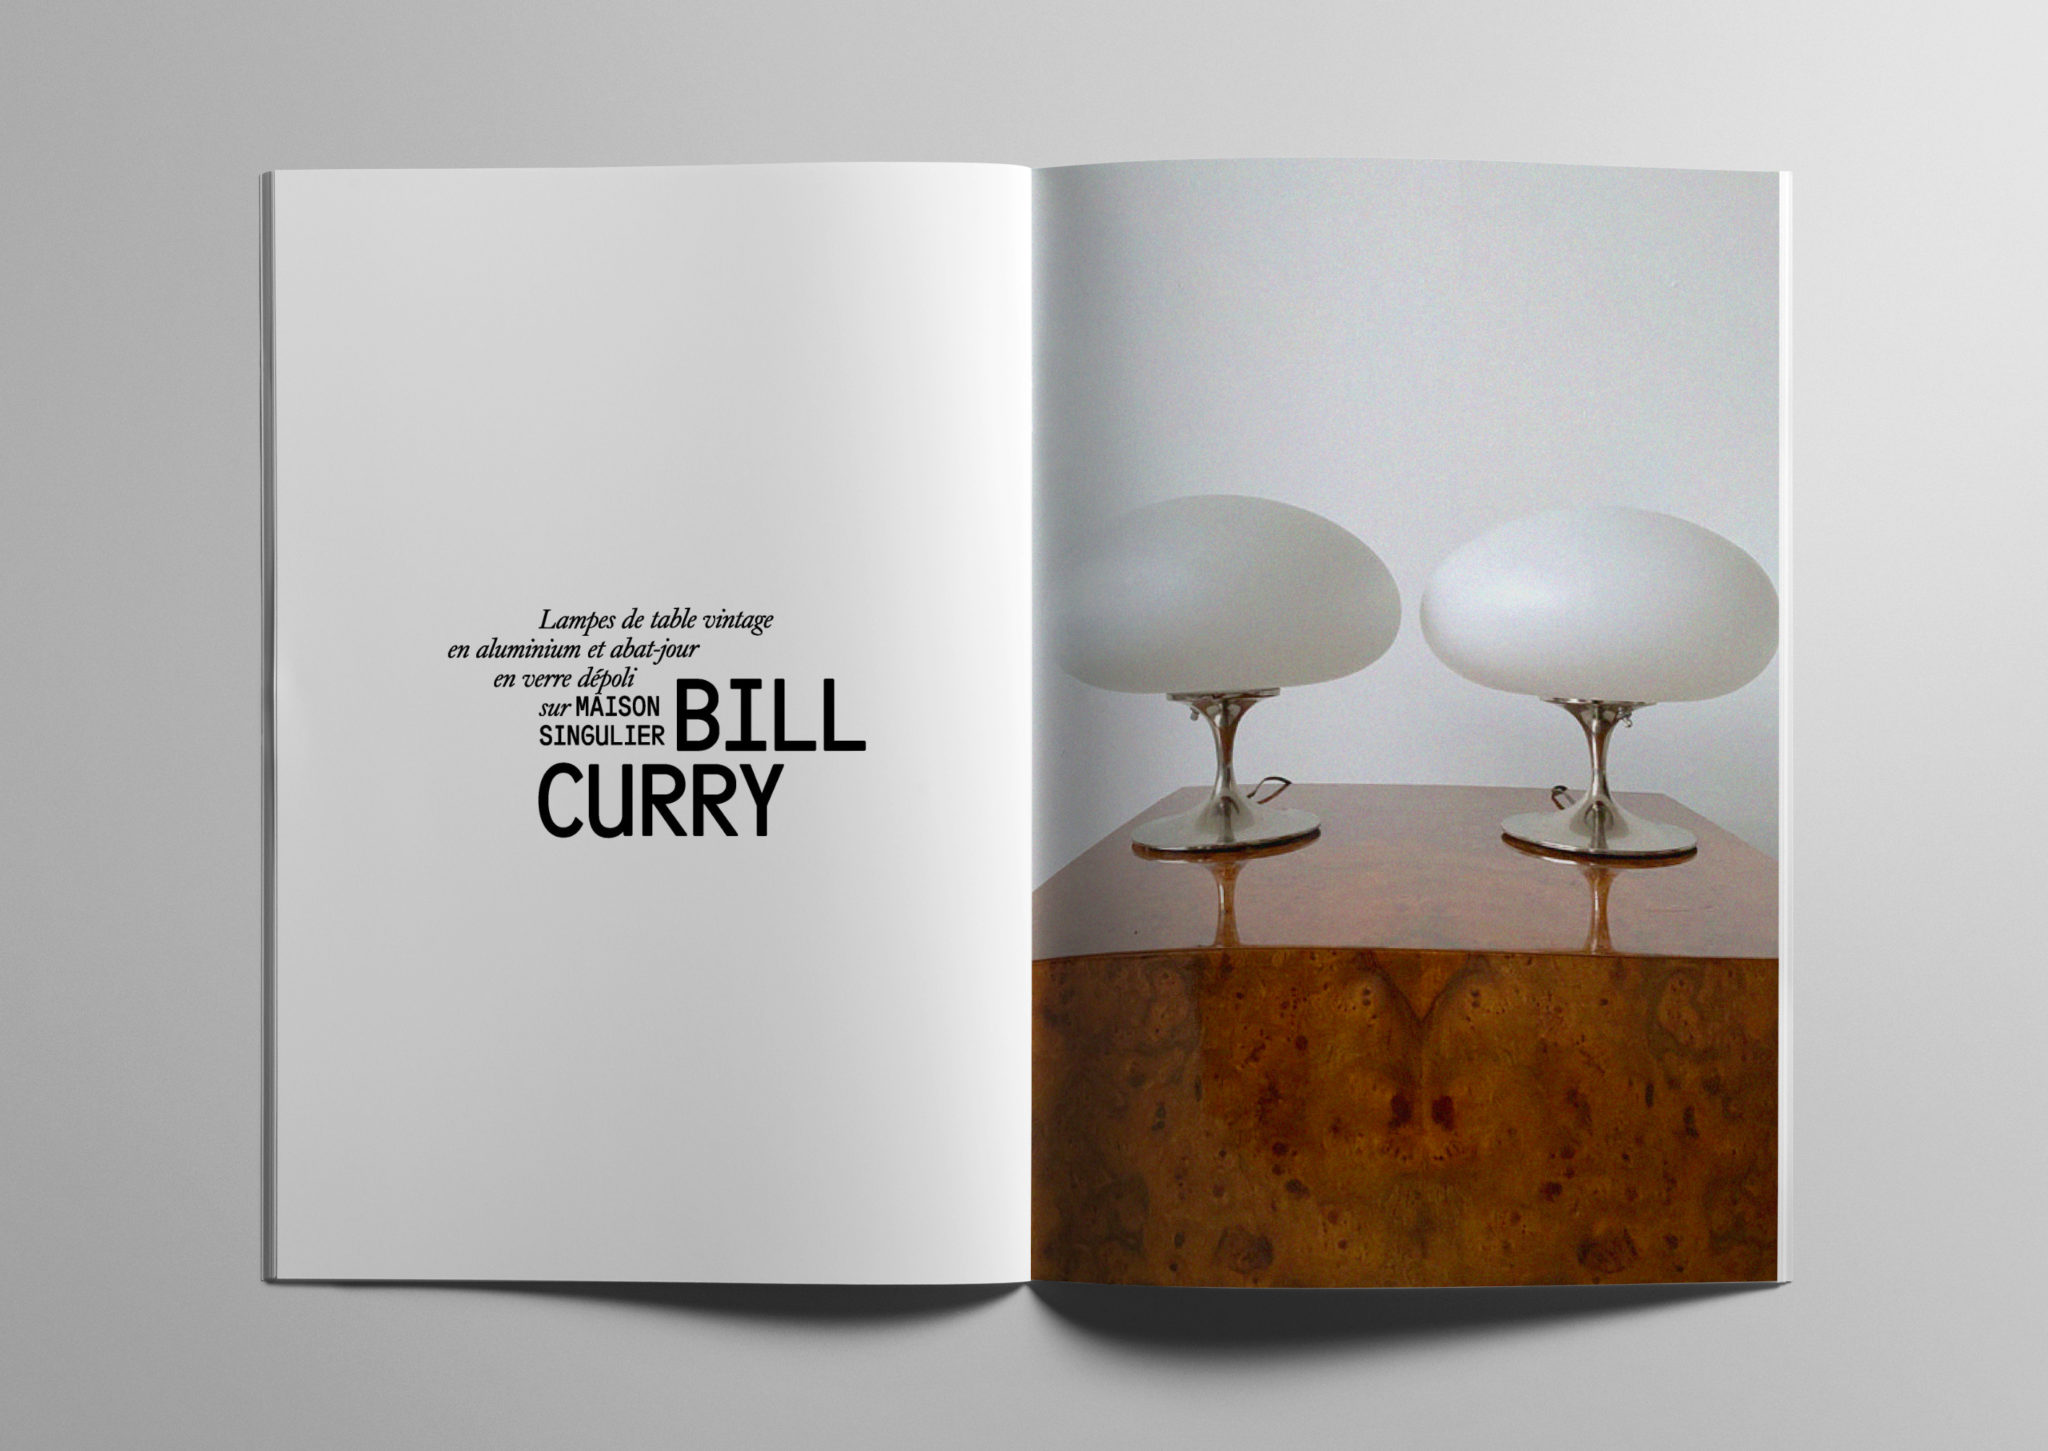 Lampes de table vintage en aluminium et abat-jour en verre dépoli par BILL CURRY sur MAISON SINGULIER